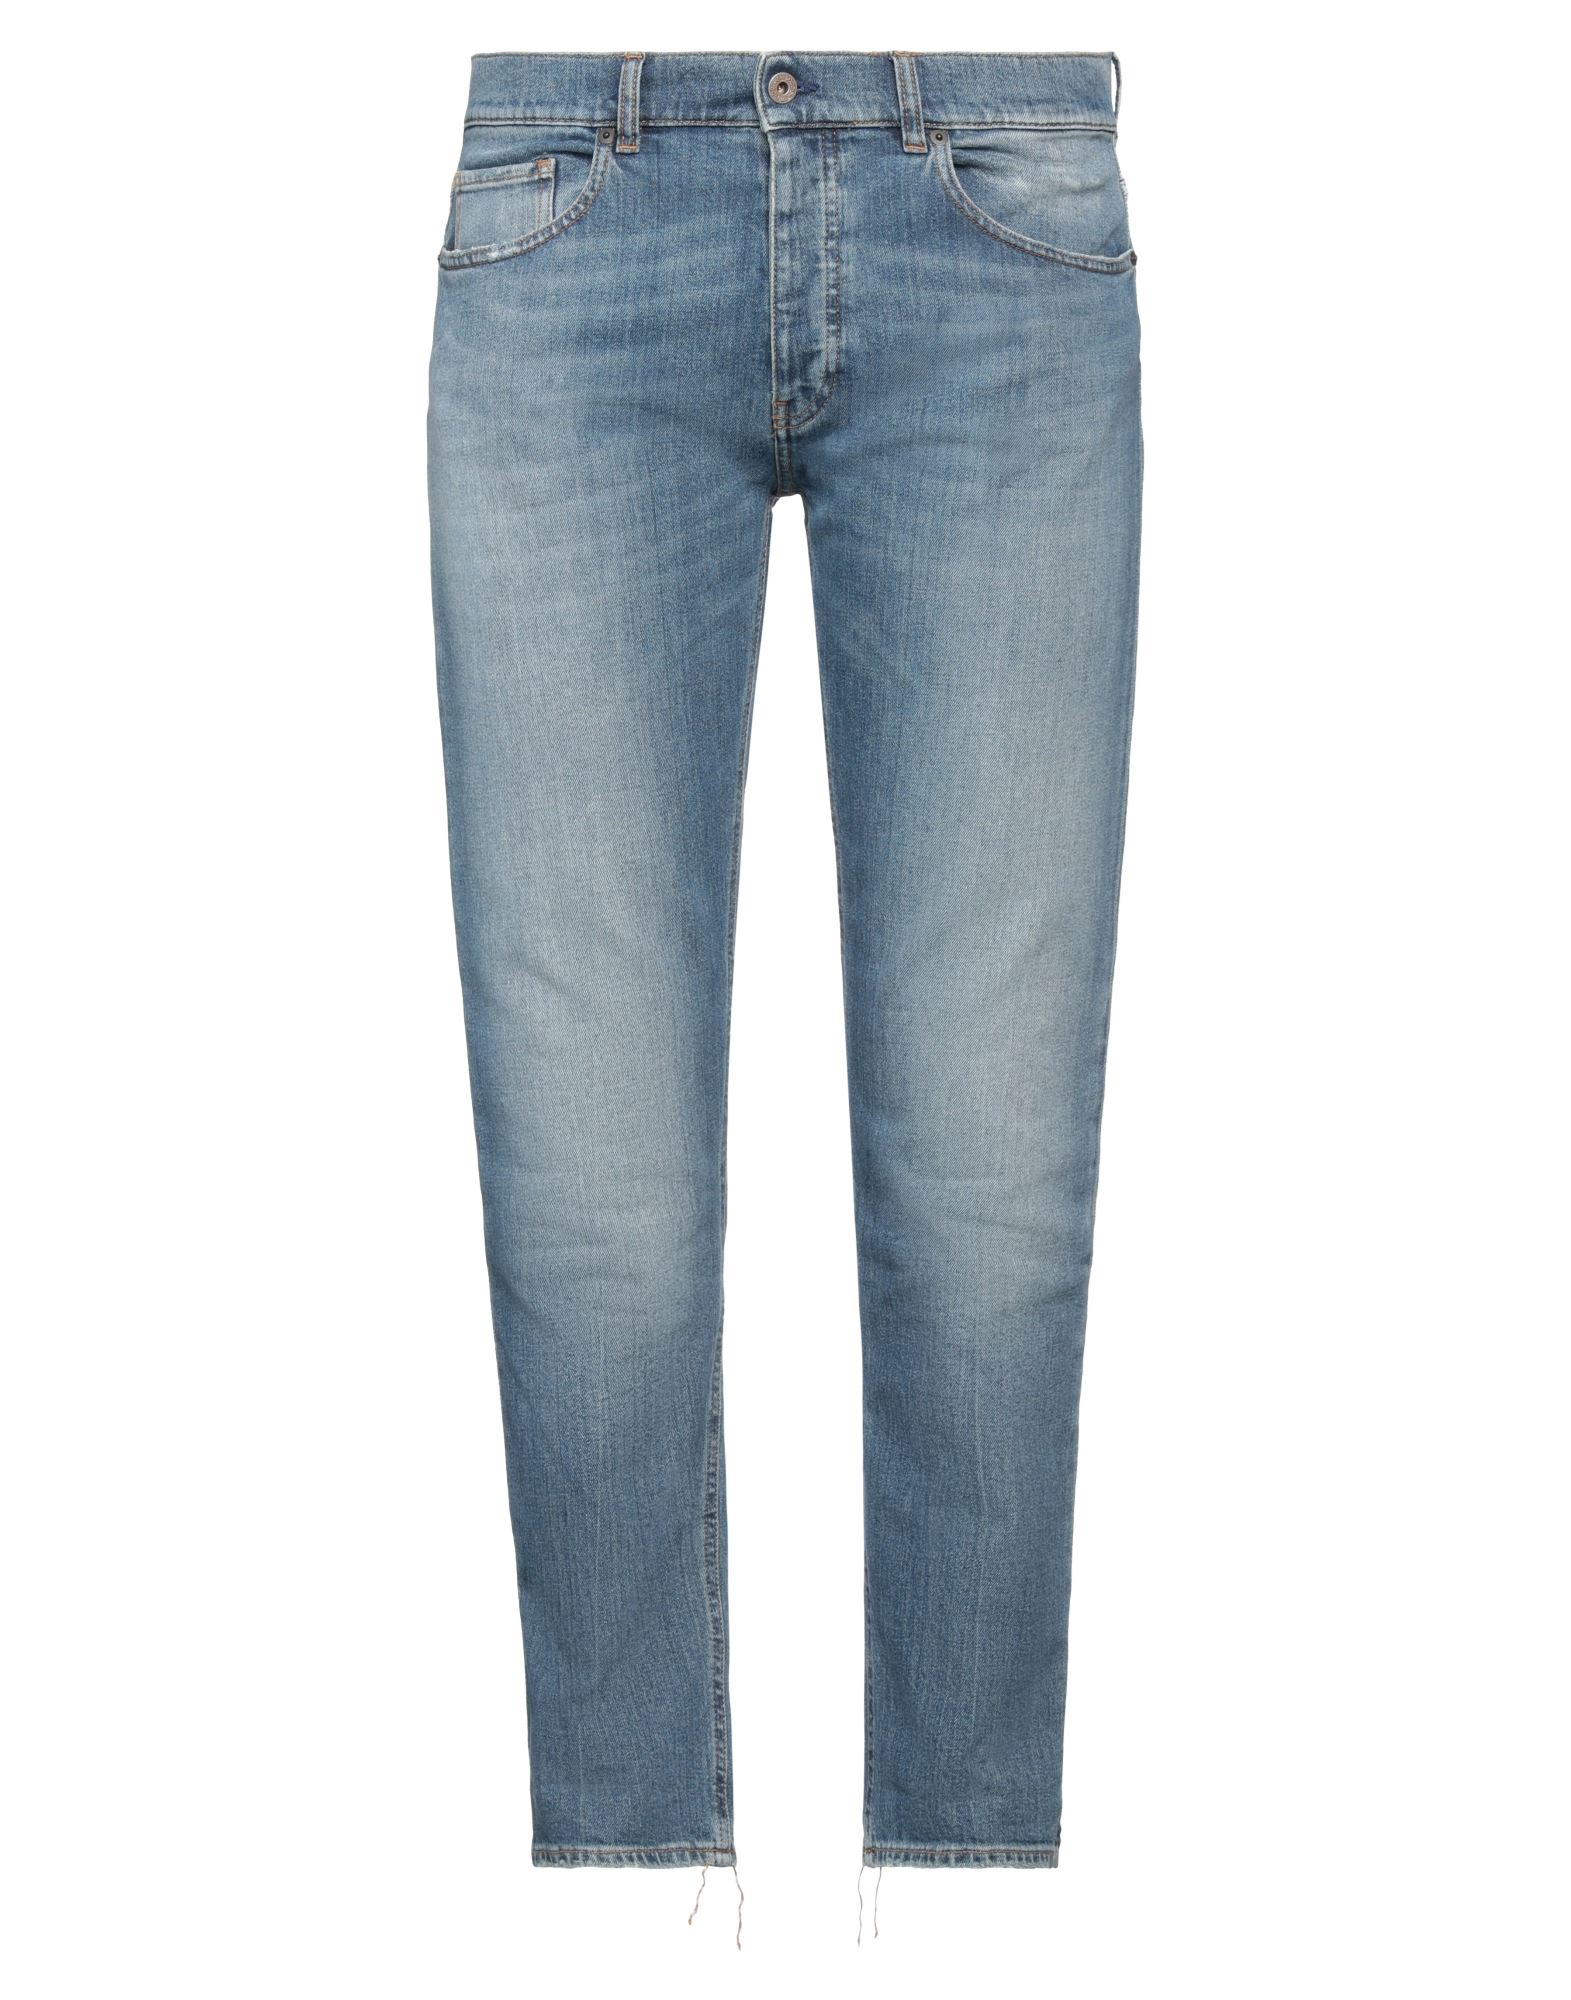 Pence Man Jeans Blue Size 30 Cotton, Elastane